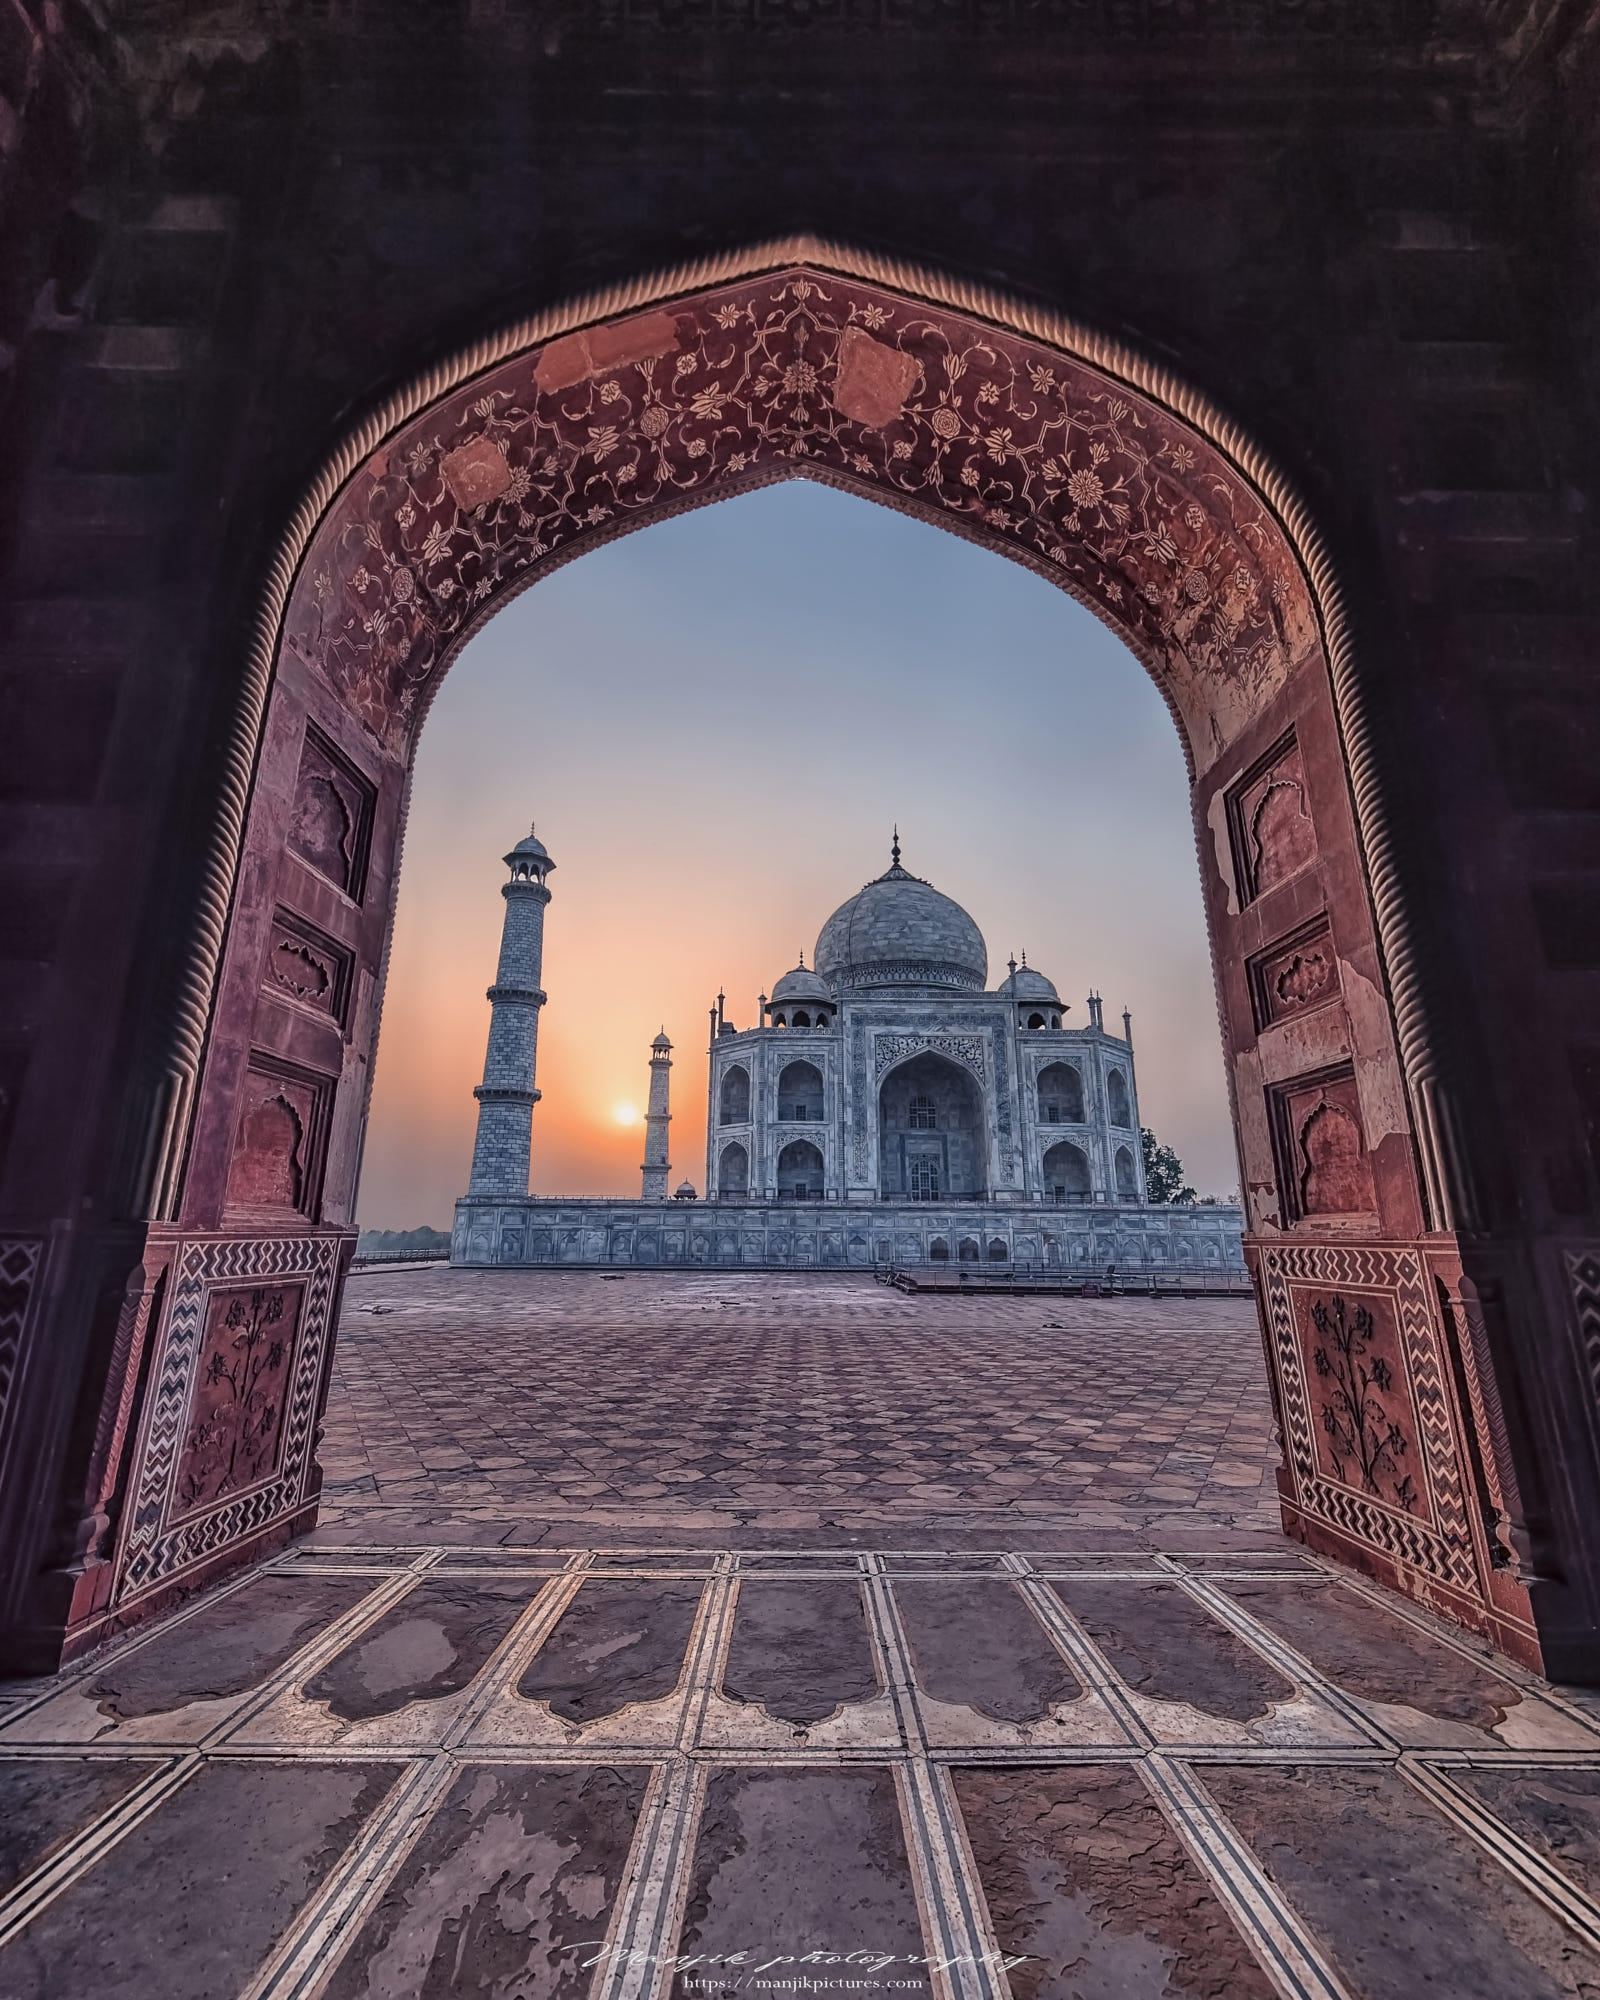 First light on the Taj Mahal